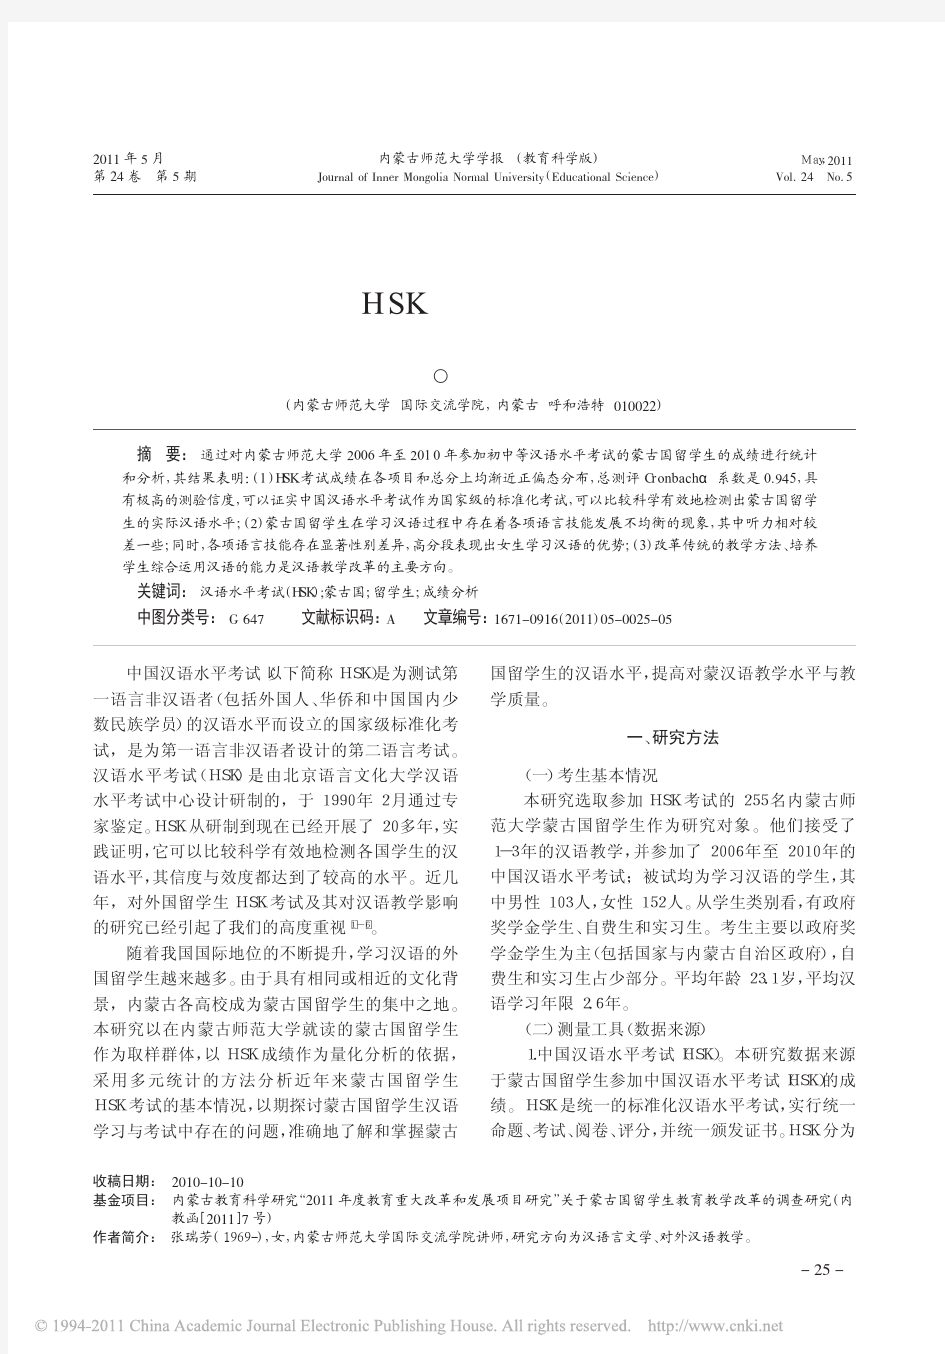 蒙古国留学生HSK考试成绩的量化分析报告